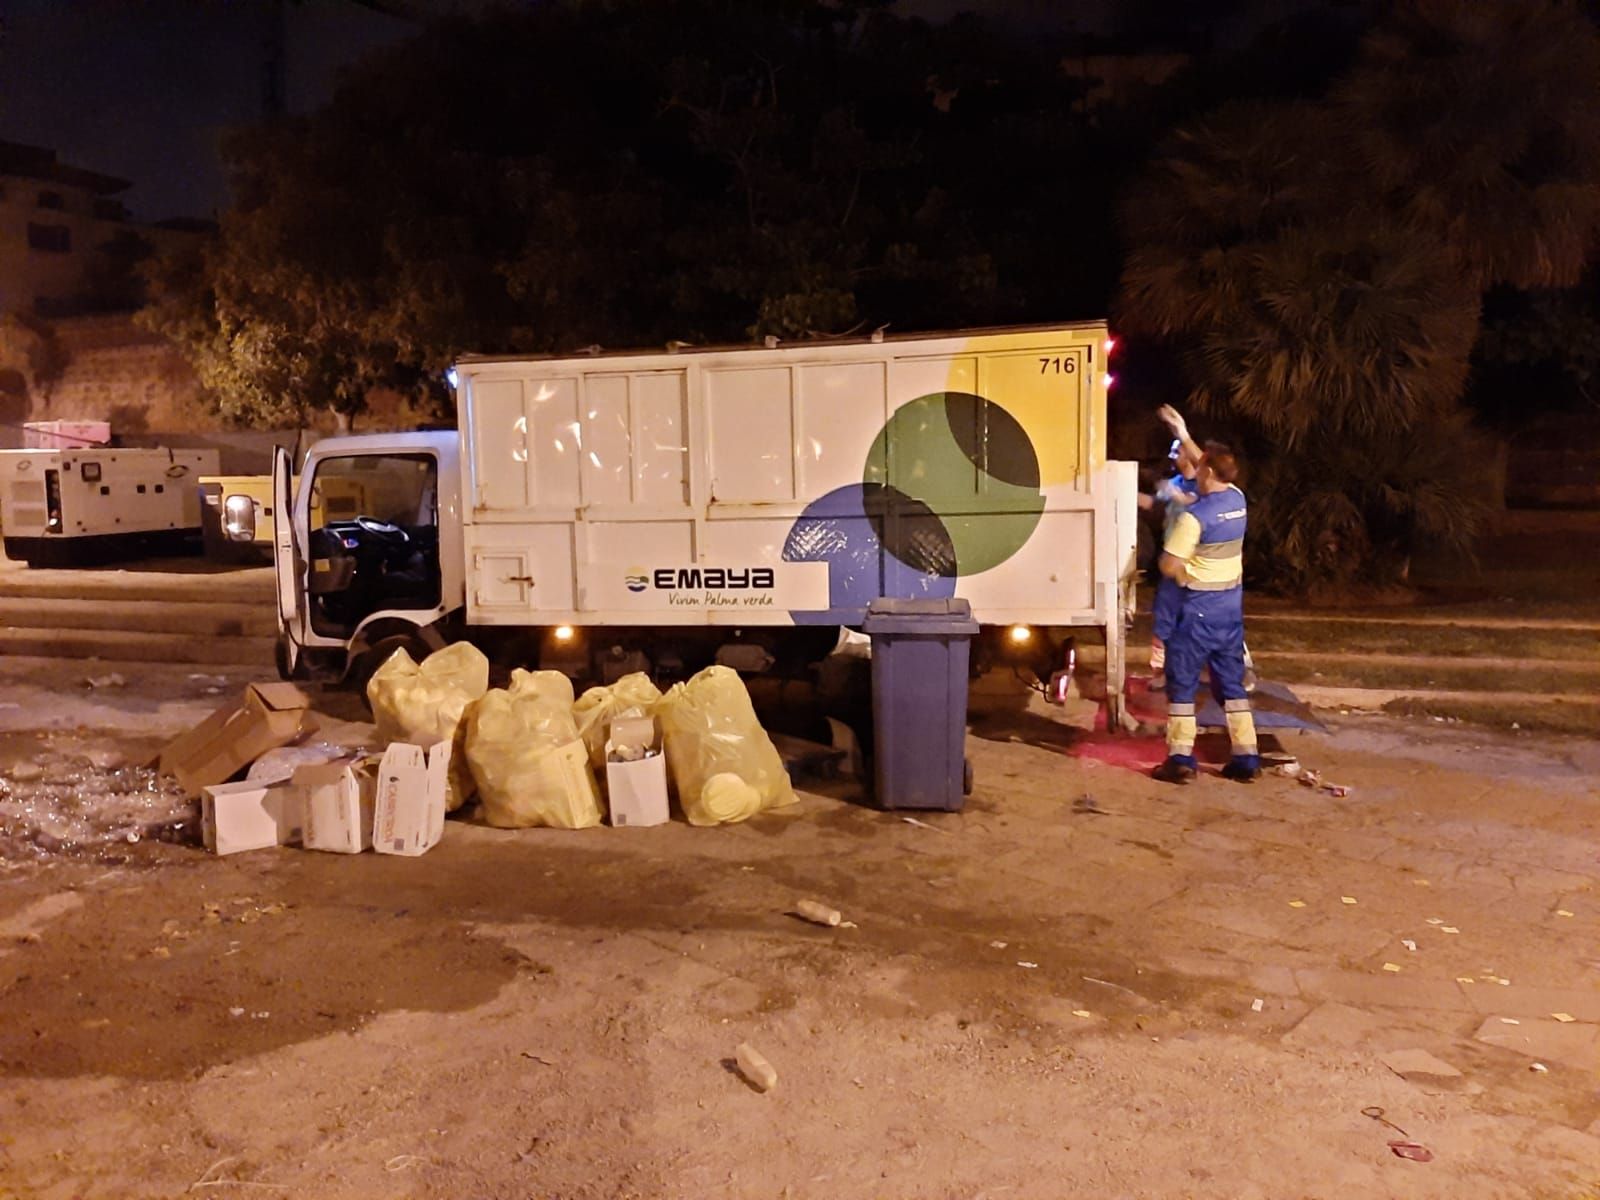 Recogidas 13 toneladas de basura en las playas de Palma la Nit de Sant Joan